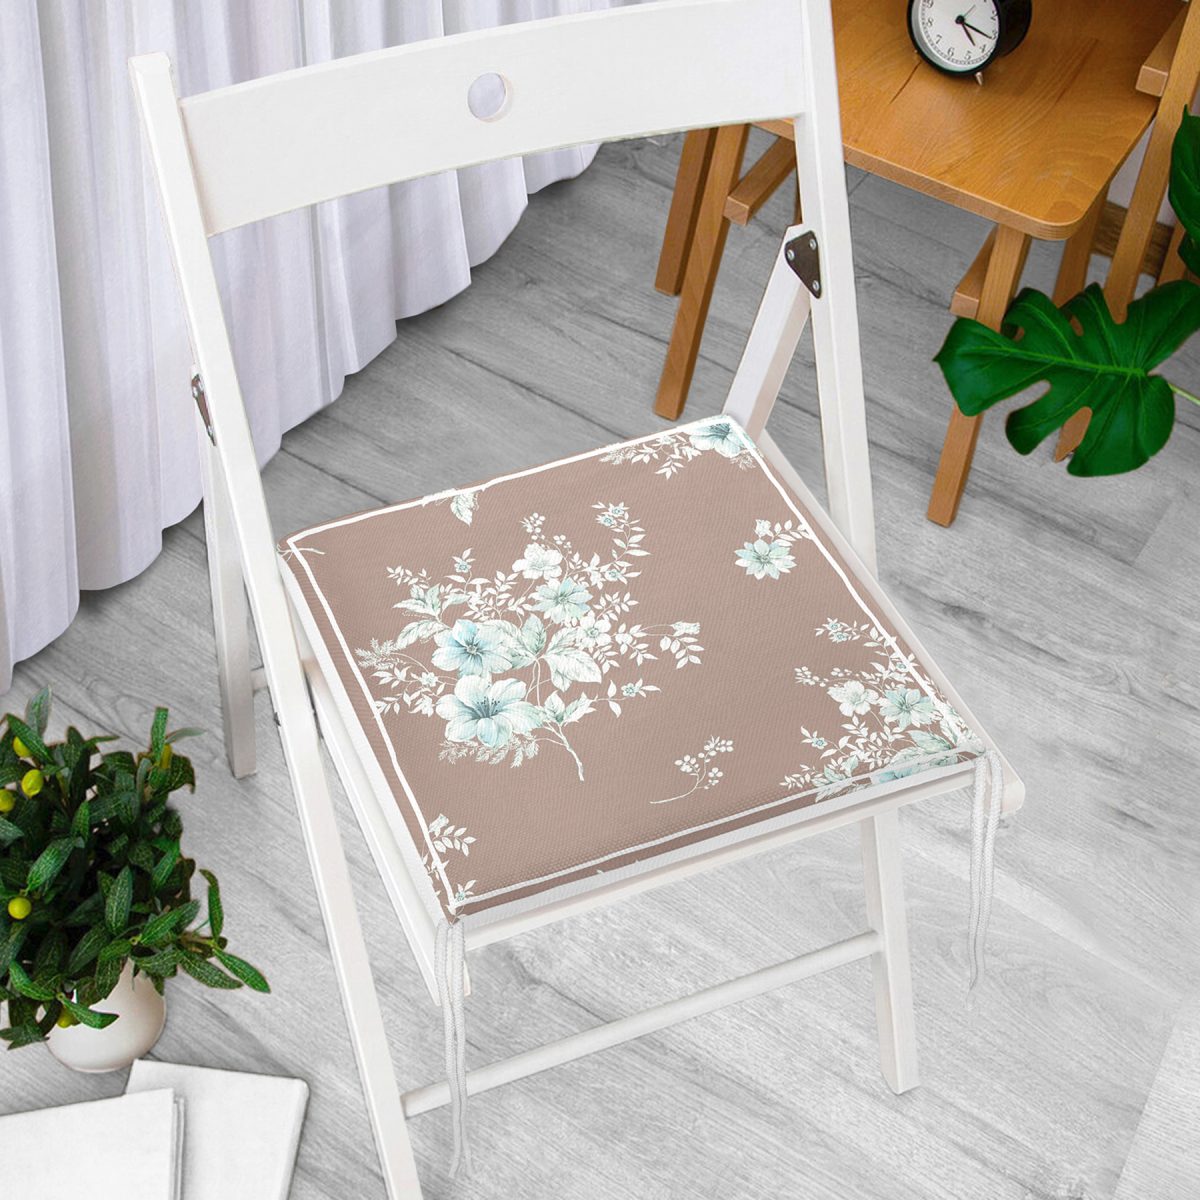 Kahverengi ve Çiçeklerin Uyumu Özel Tasarım Dijital Baskılı Fermuarlı Sandalye Minderi Realhomes